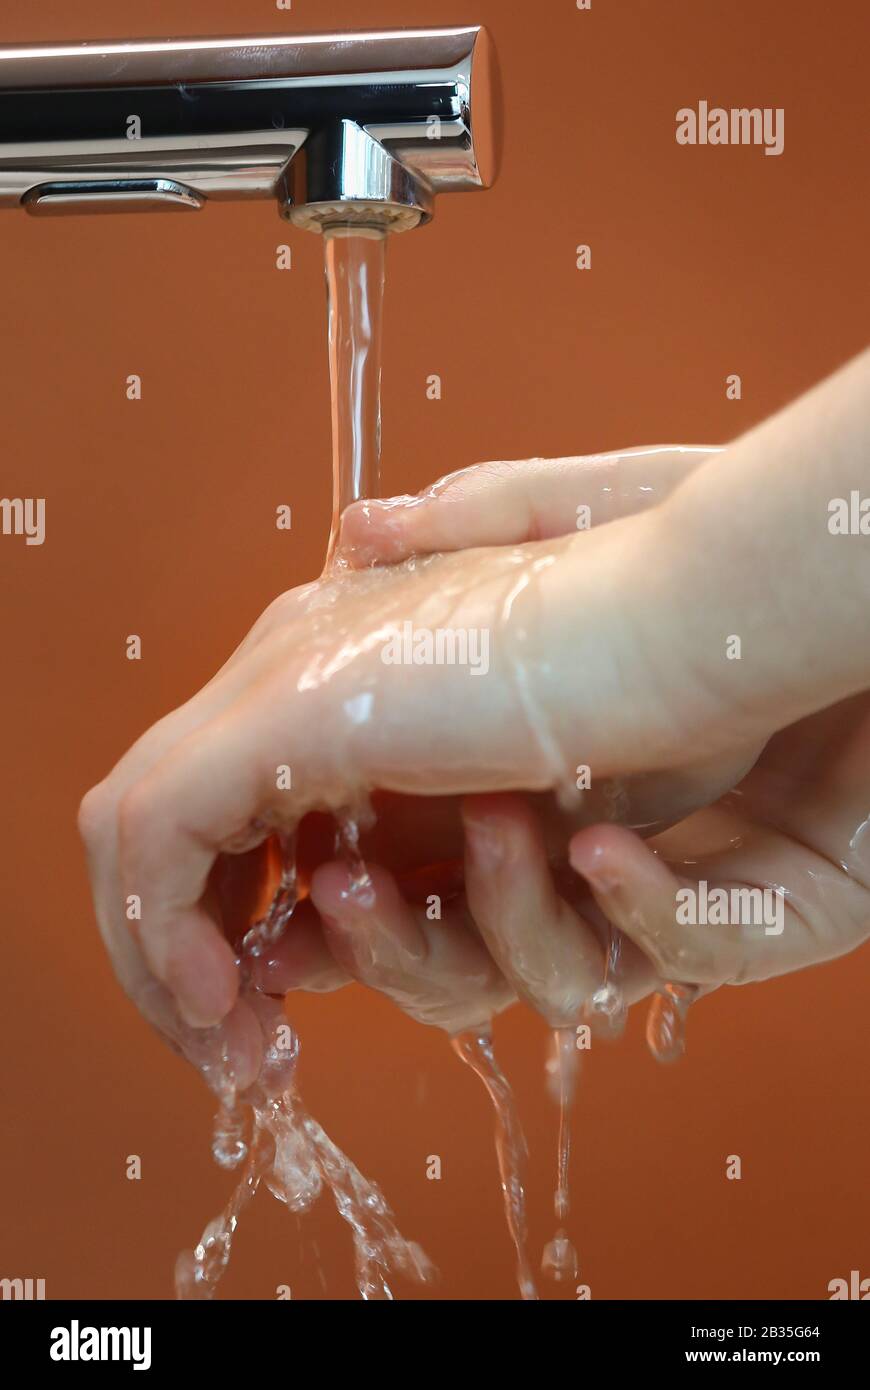 Eine Person wäscht ihre Hände unter fließendem Wasser. PA Foto. Bilddatum: Mittwoch, 4. März 2020. Siehe PA Story HEALTH Coronavirus. Der Fotowredit sollte lauten: Philip Toscano/PA Wire Stockfoto